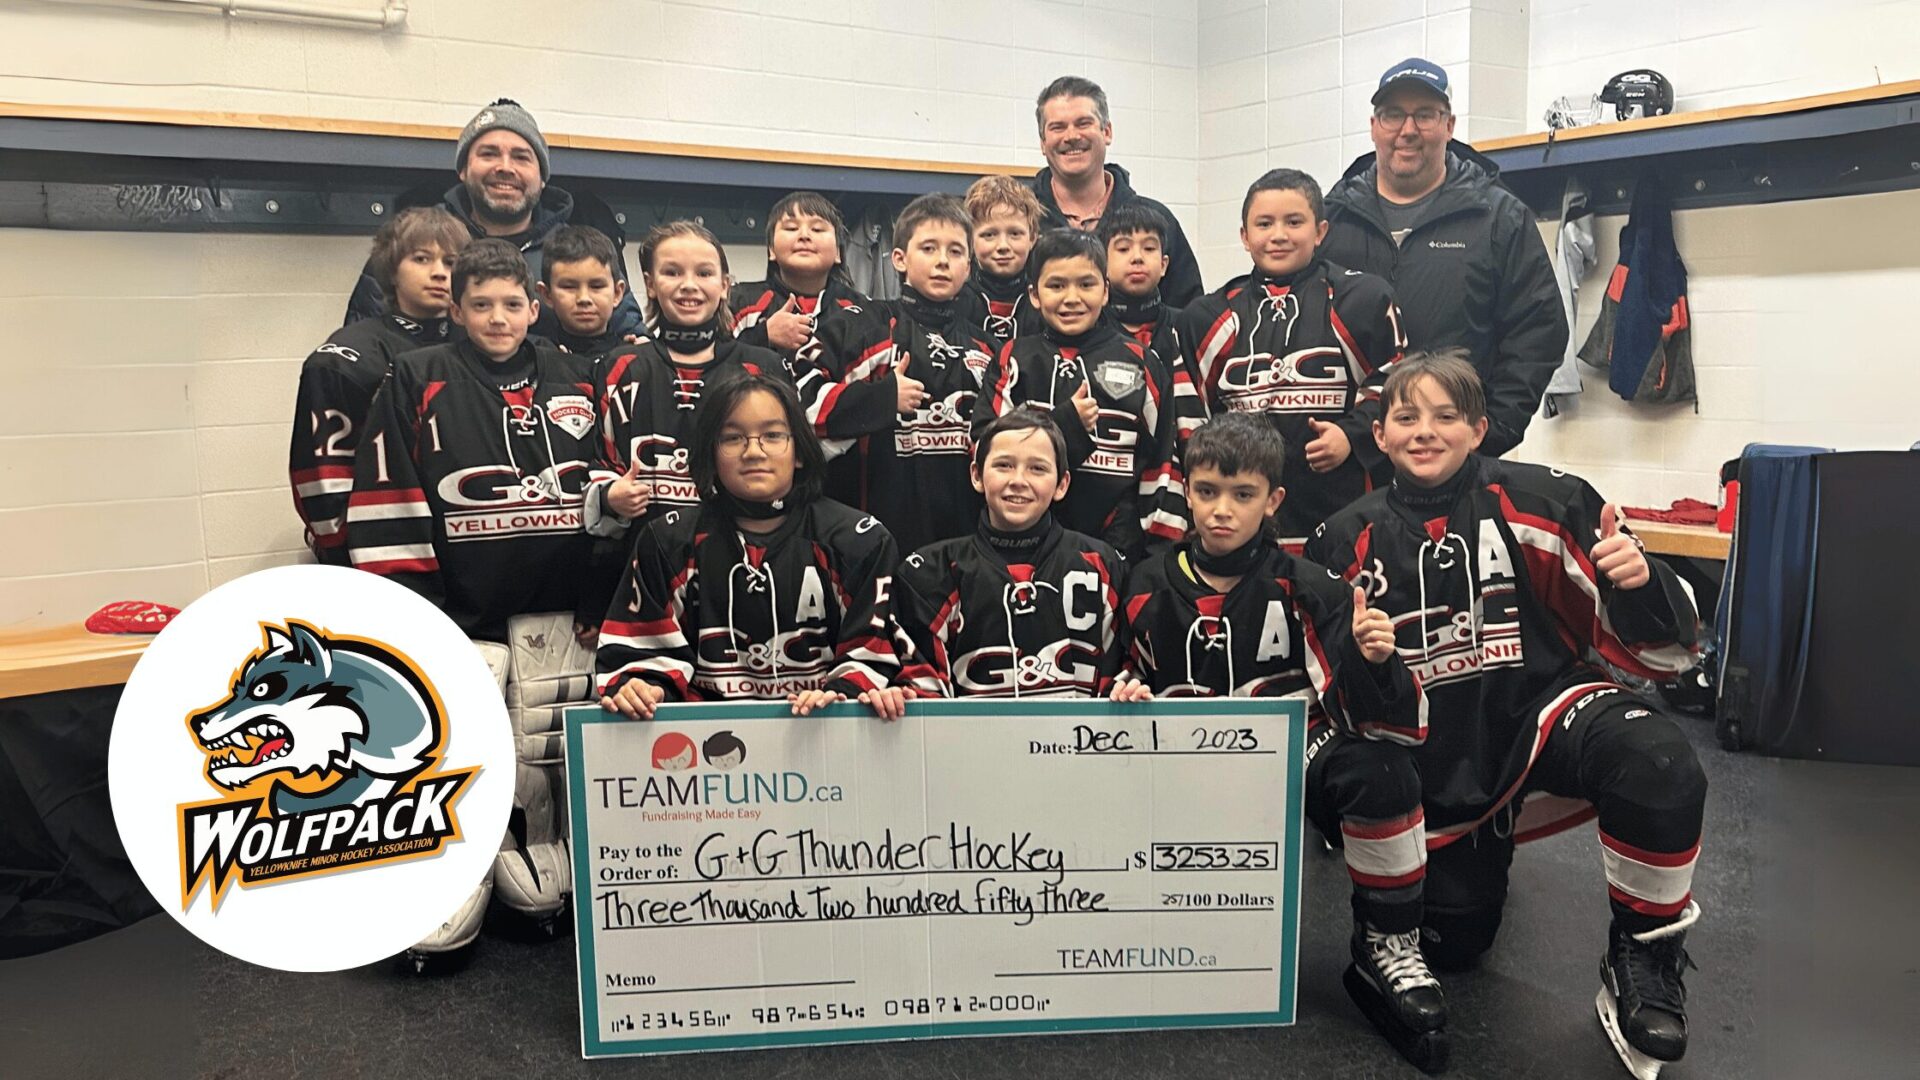 G&G Thunder Hockey Raises Over $3K in Yellowknife Food Fundraiser